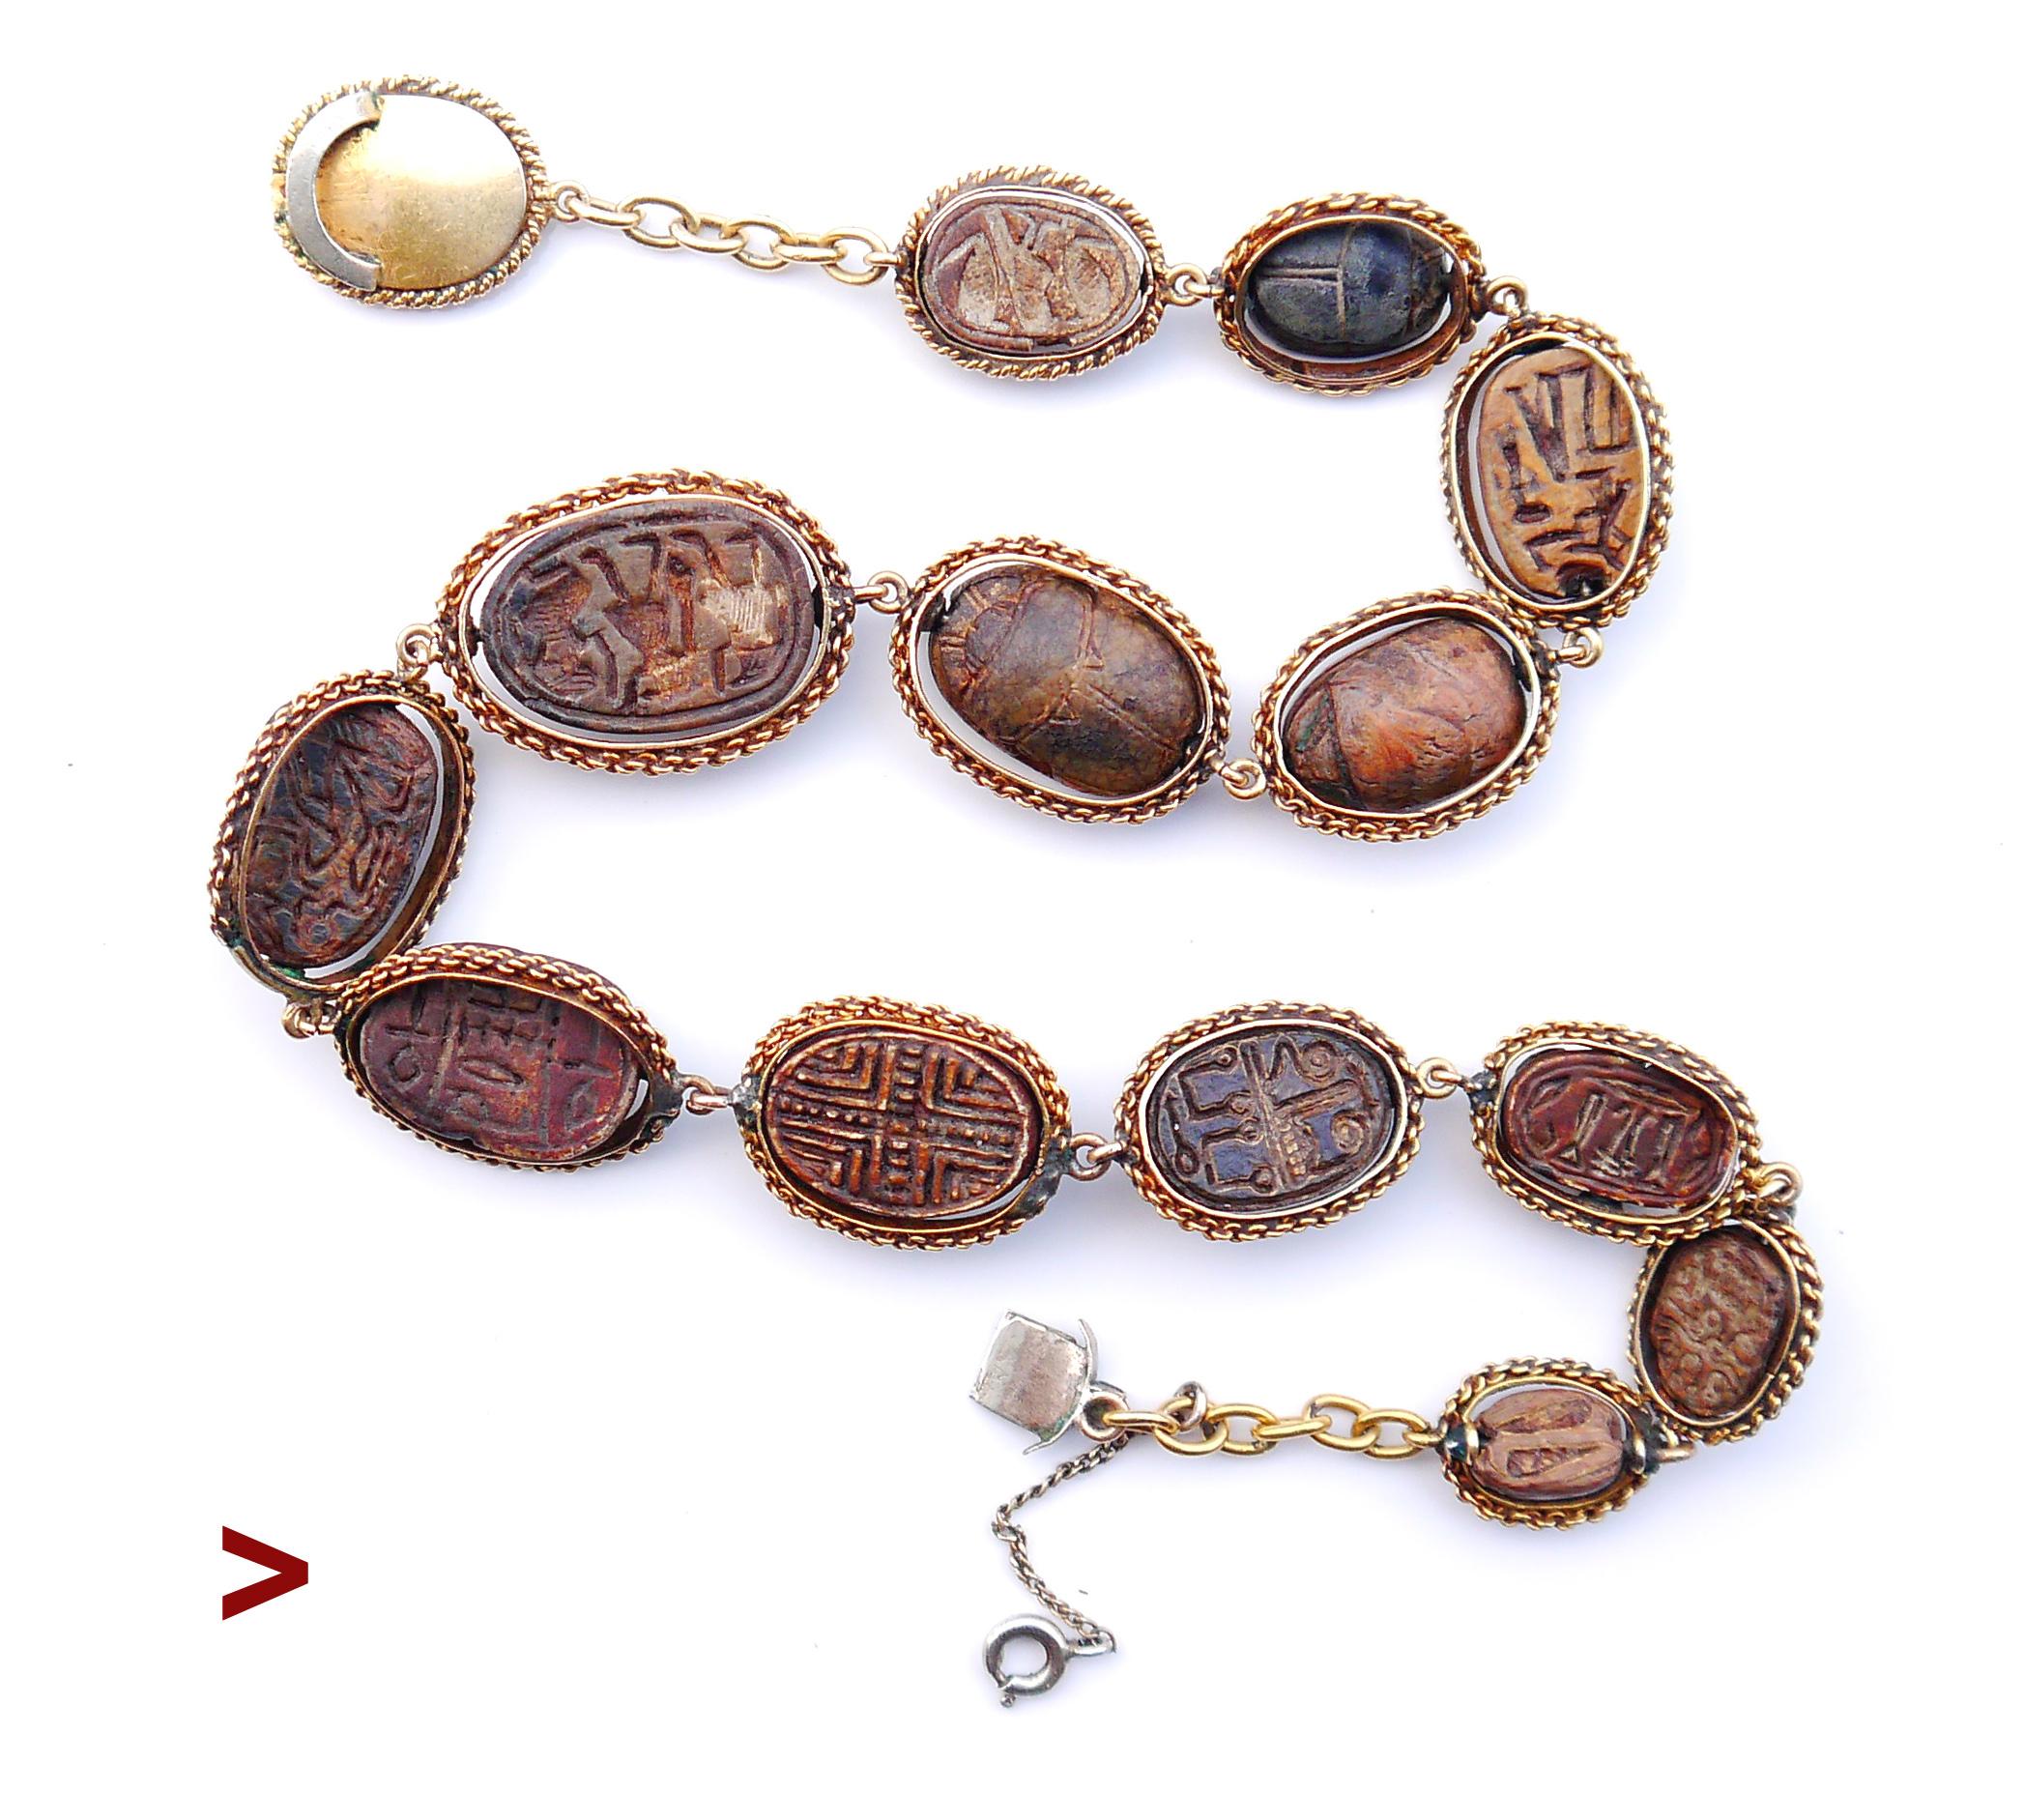 Dies ist eine einmalige Gelegenheit, eine extrem seltene und auffallend ungewöhnliche antike Halskette, ein schönes Beispiel für ägyptische Revival Schmuck von 14 echten ca.1786 -1567 v. Chr. alten Hyksos ägyptischen / Mittleren Osten Speckstein